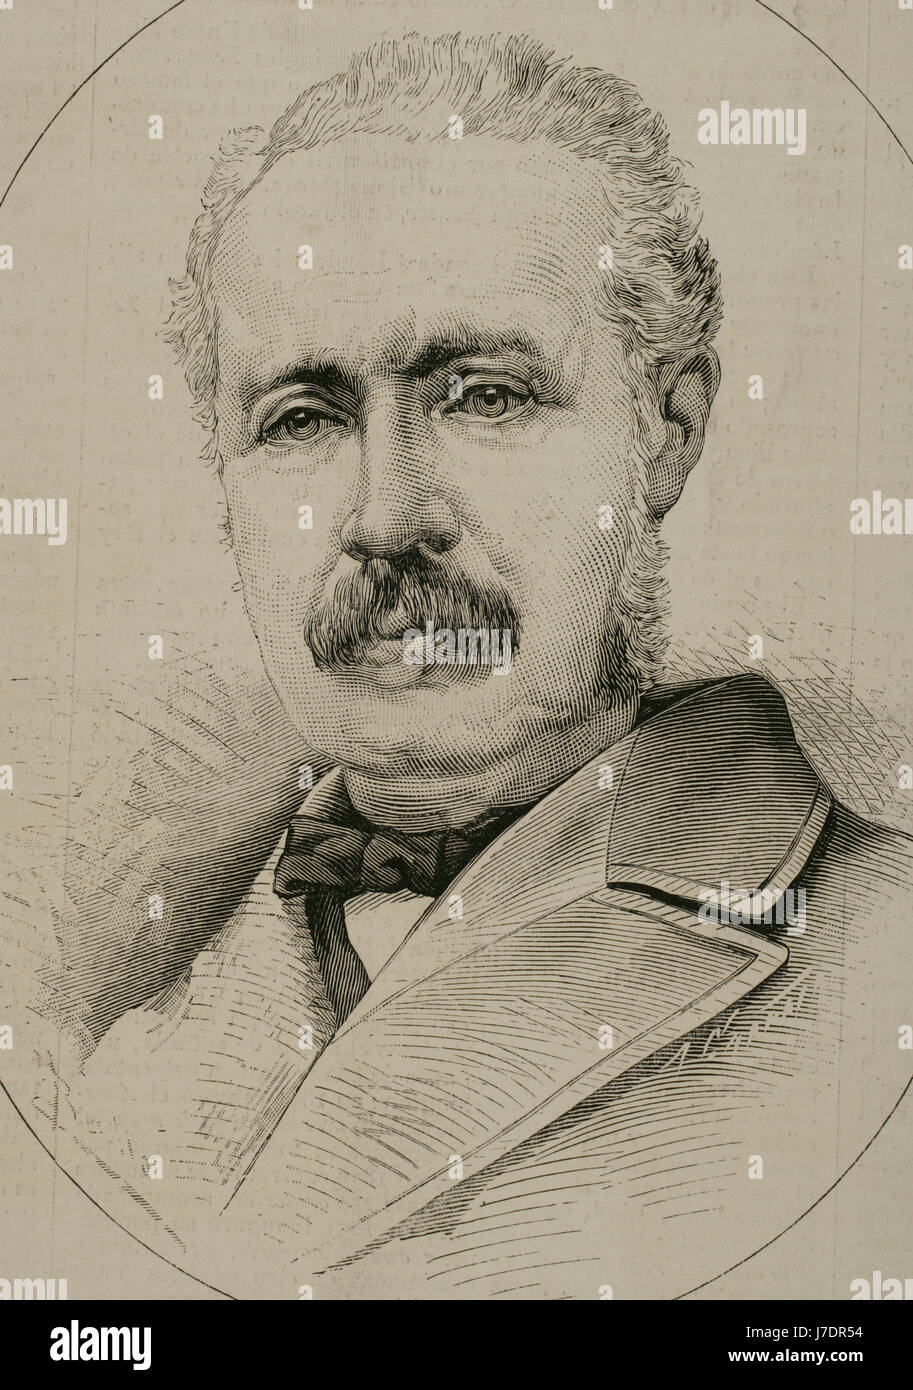 Charles George Gordon (1833 – 1885). Britischer Offizier und Administrator. Porträt. Kupferstich von Arturo Carretero. "La Ilustracion Espanola y Americana", 1884. Stockfoto